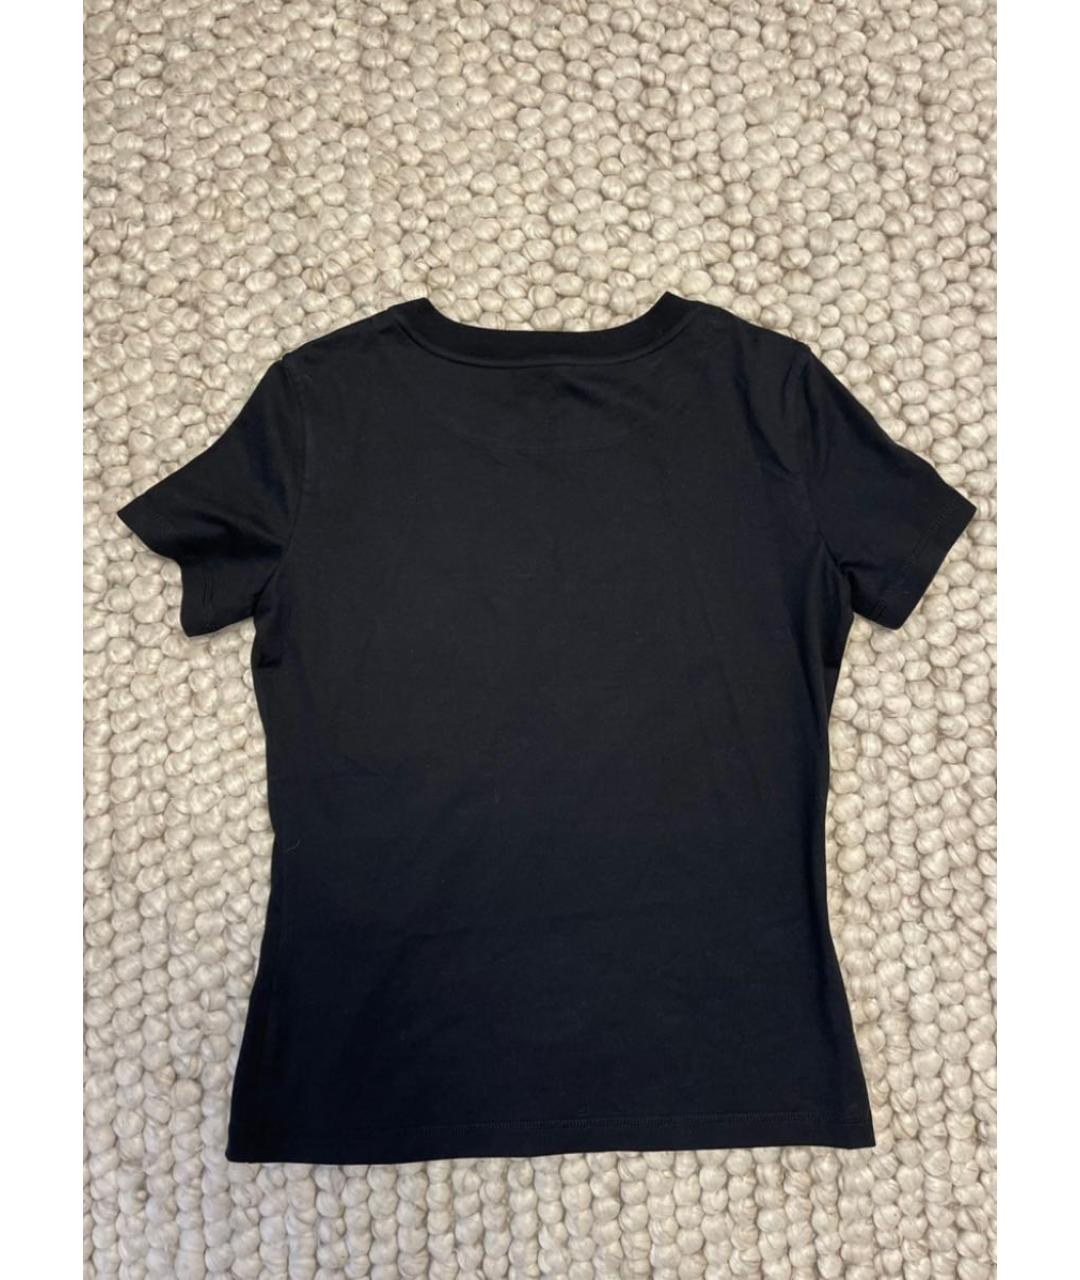 HERMES PRE-OWNED Черная хлопковая футболка, фото 2